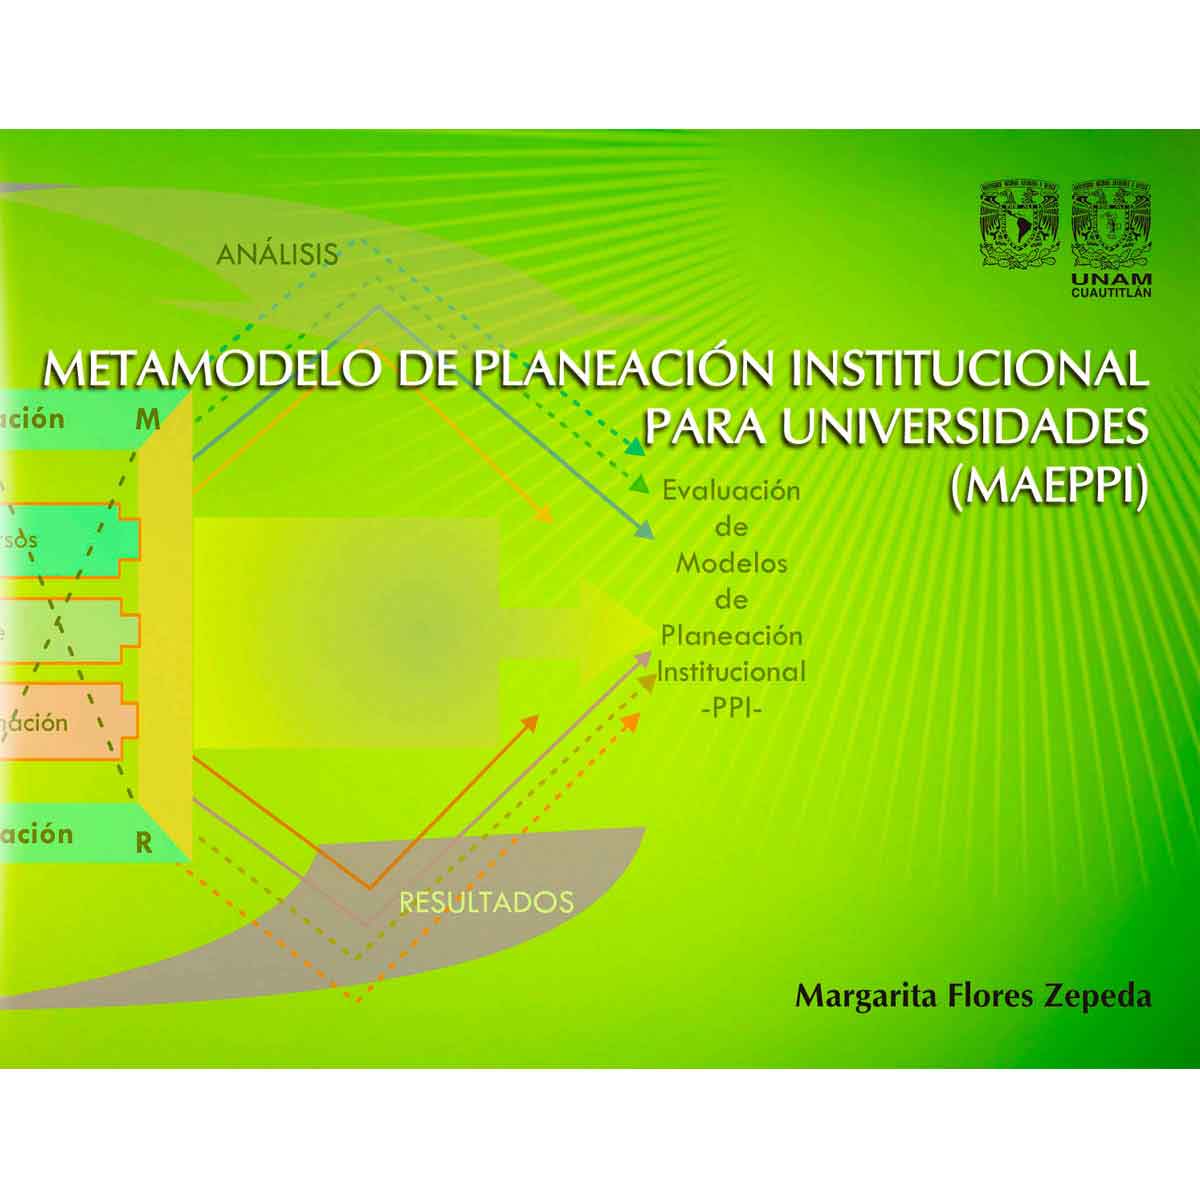 METAMODELO DE PLANEACIÓN INSTITUCIONAL PARA UNIVERSIDADES (MAEPPI)